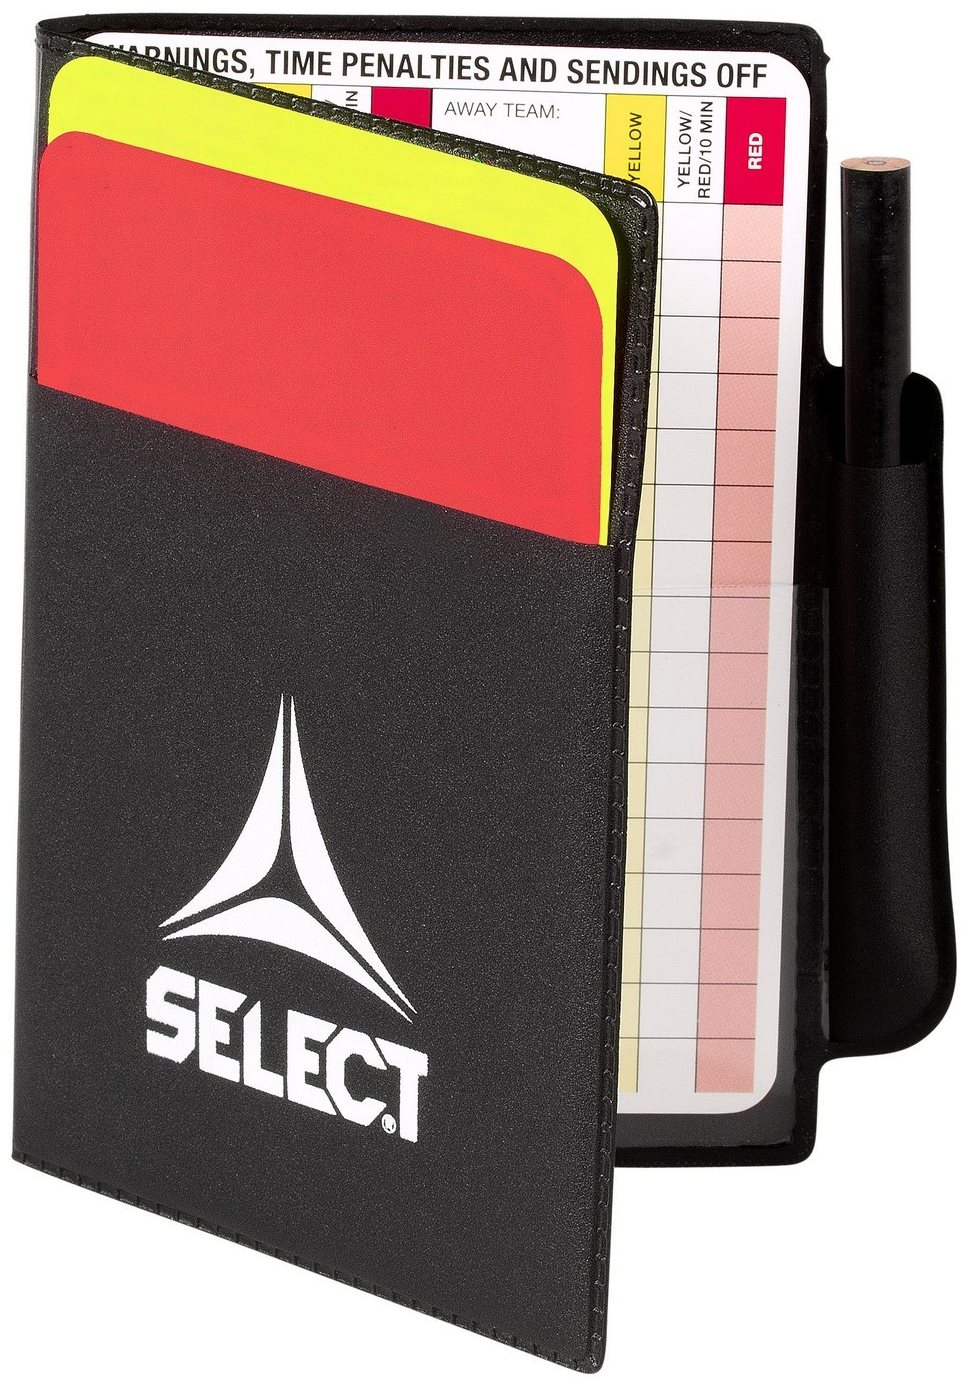 Labdarúgó játékvezető felszerelés Select Referee cards set